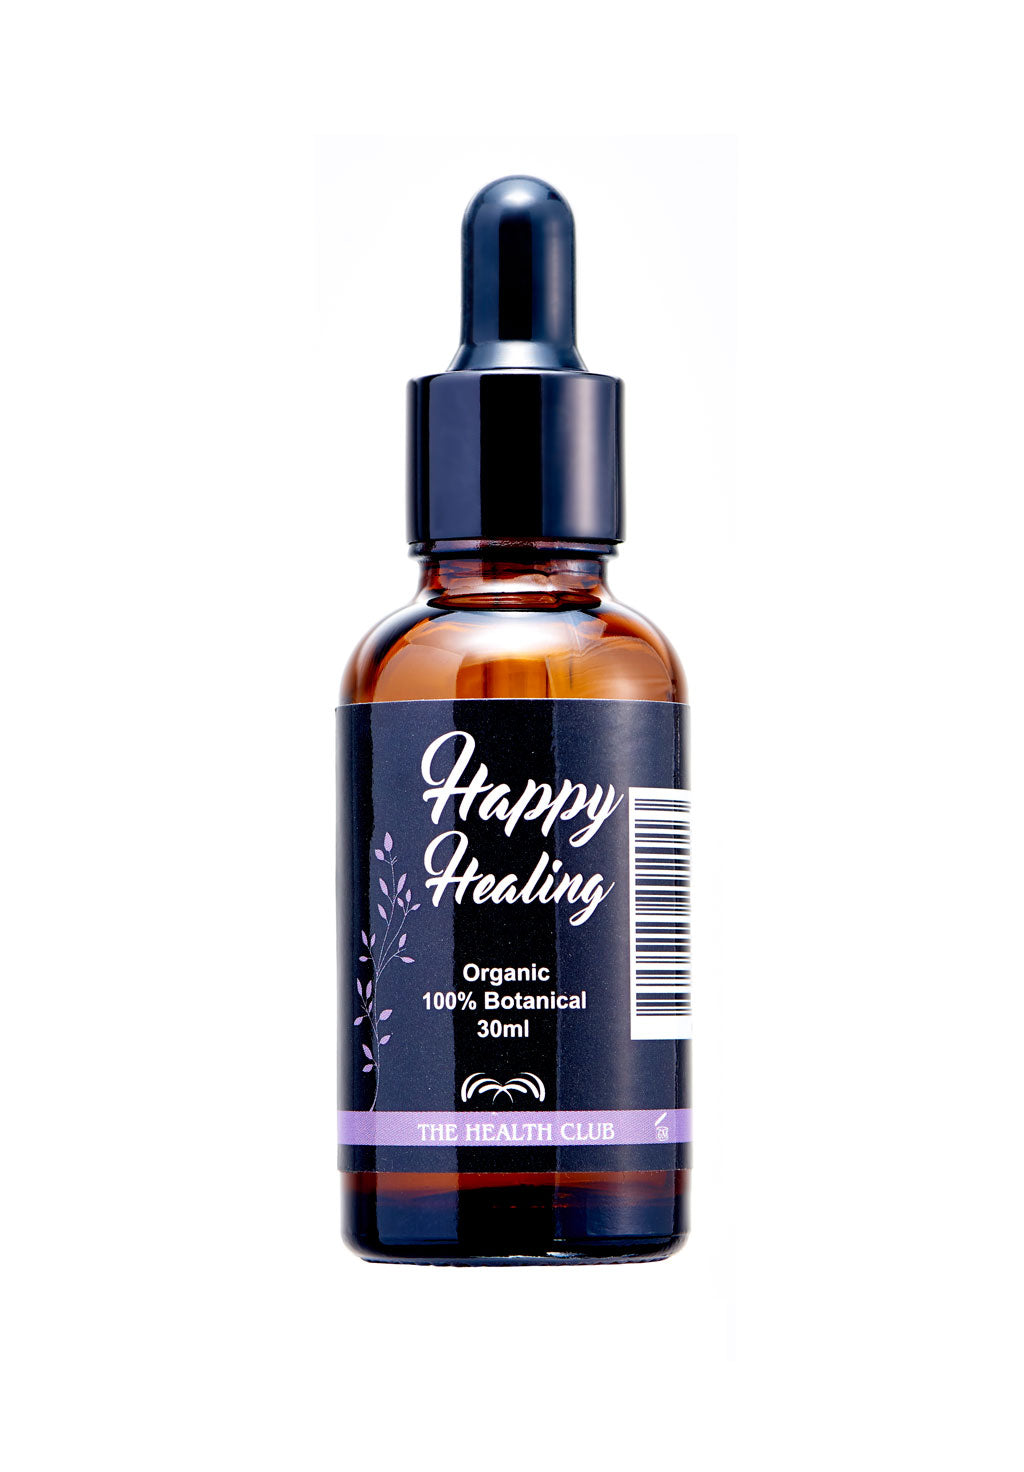 HappyHealing Oil (The Skin Healer)